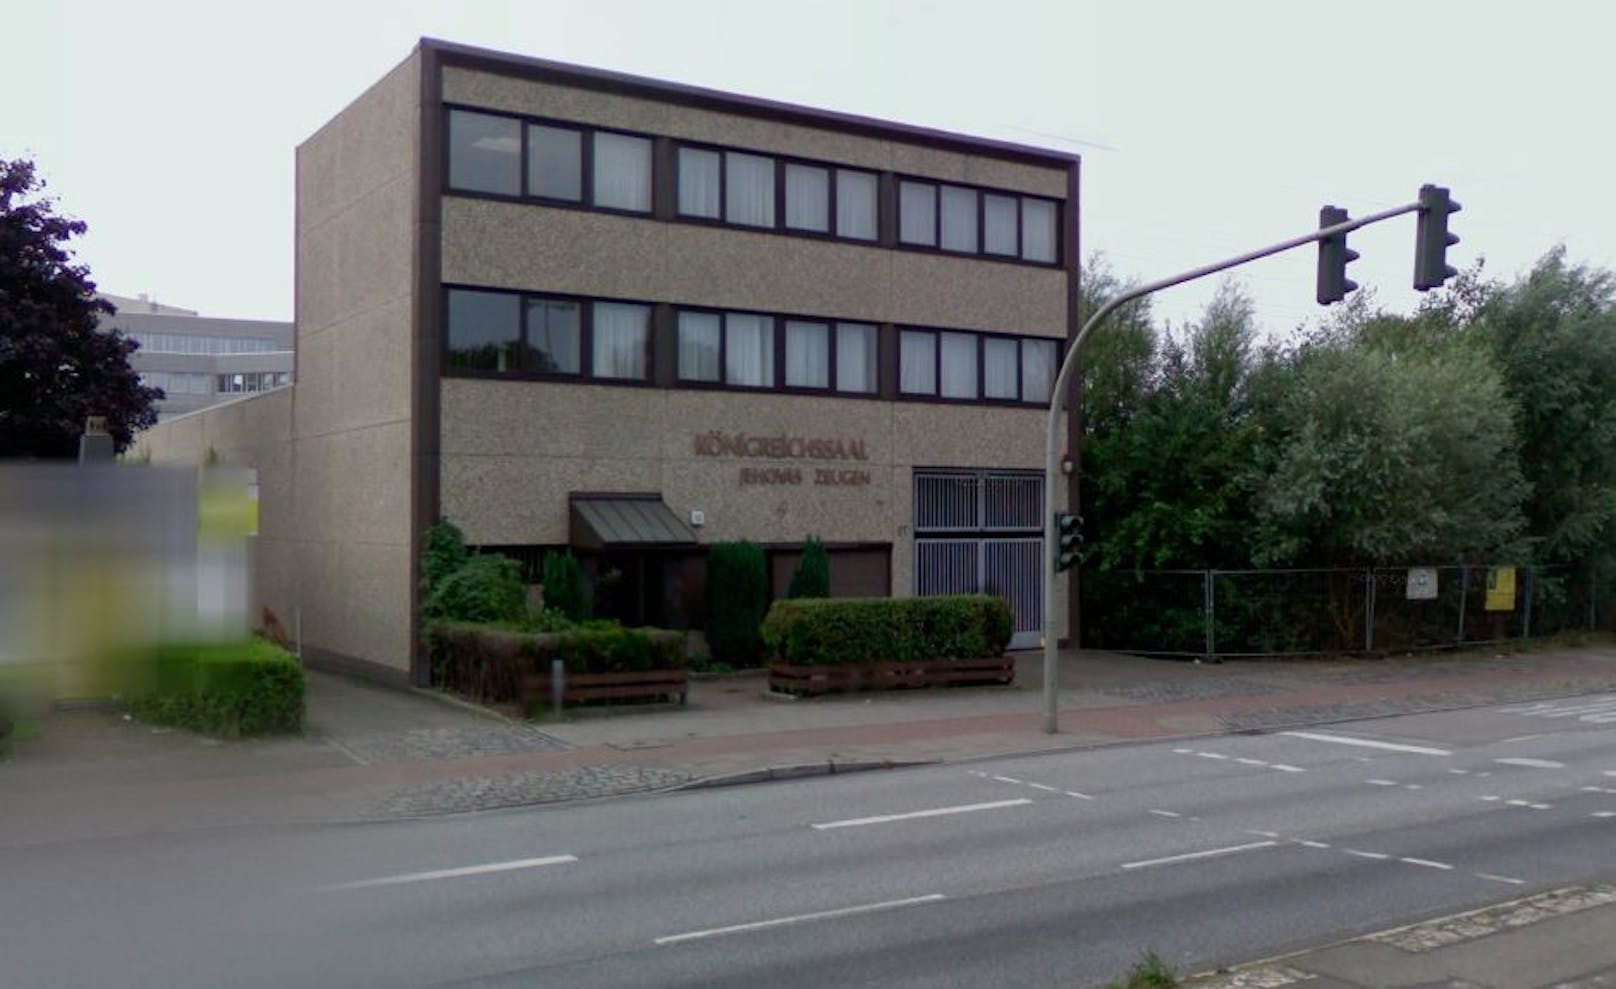 In diesem Königreichssaal der Zeugen Jehovas im Stadtteil&nbsp;Groß Borstel befindet sich der Tatort.